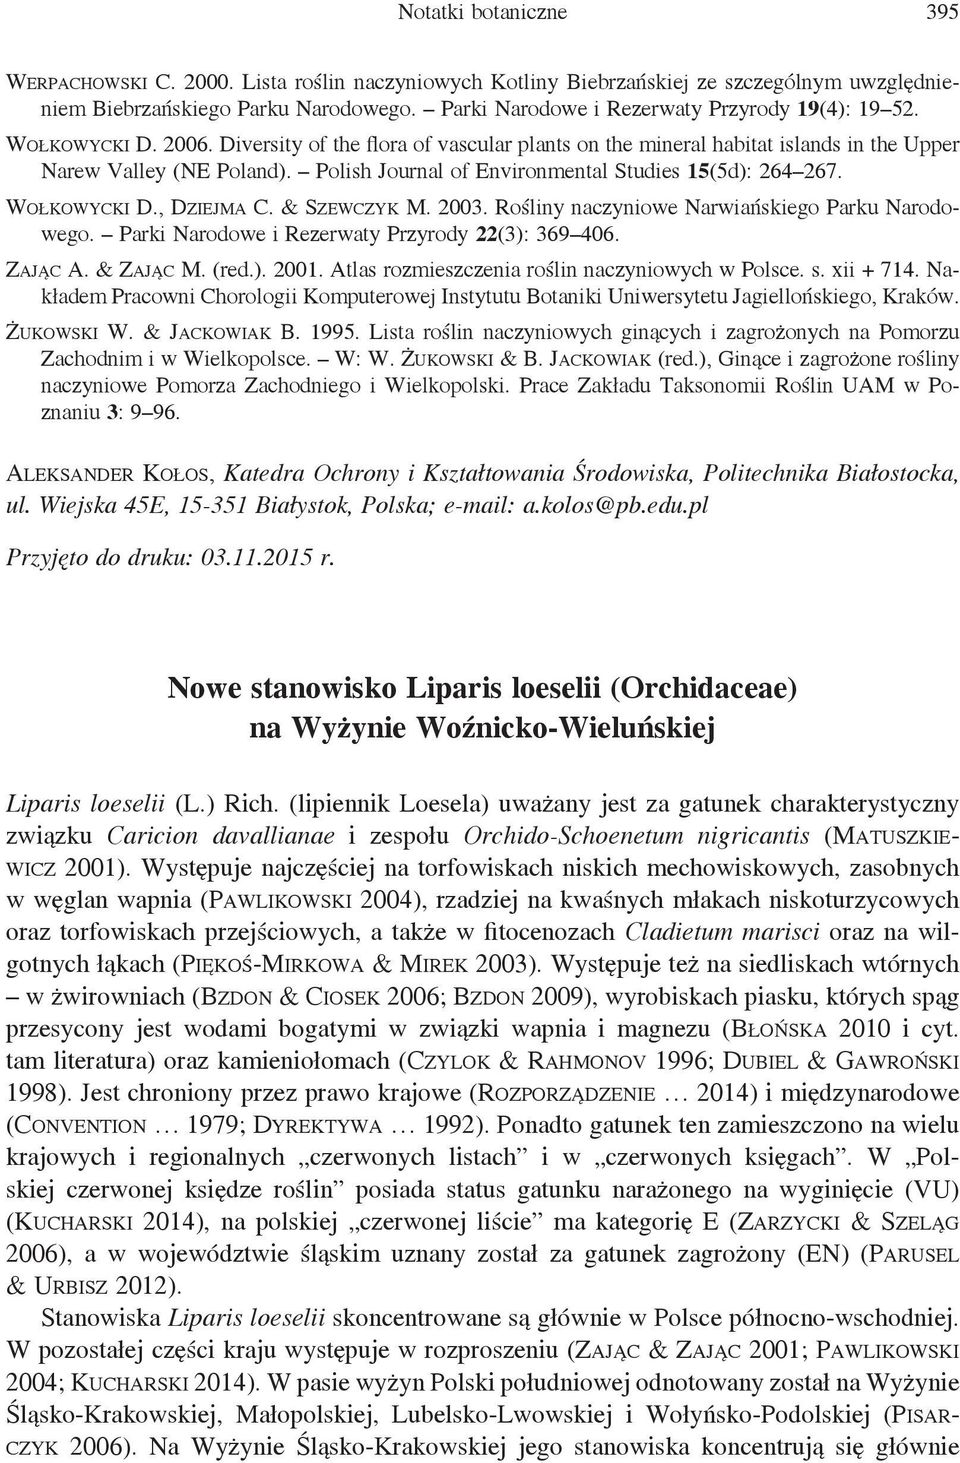 Polish Journal of Environmental Studies 15(5d): 264 267. Wołkowycki D., Dziejma C. & Szewczyk M. 2003. Rośliny naczyniowe Narwiańskiego Parku Narodowego.